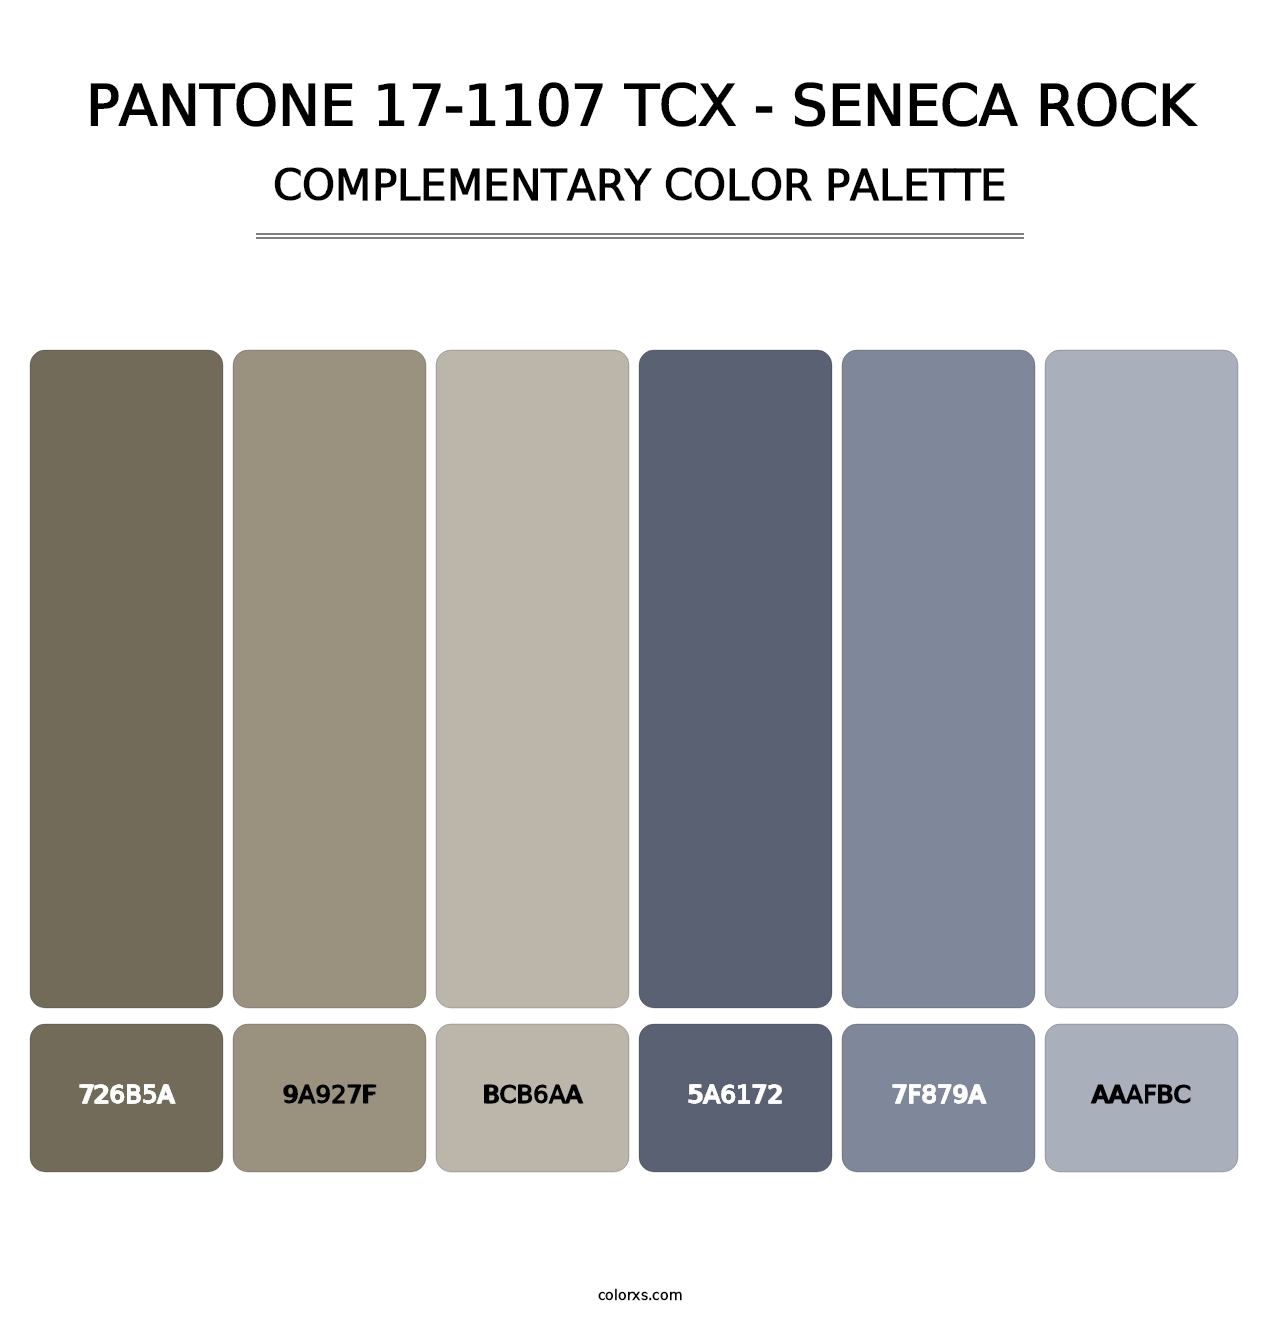 PANTONE 17-1107 TCX - Seneca Rock - Complementary Color Palette